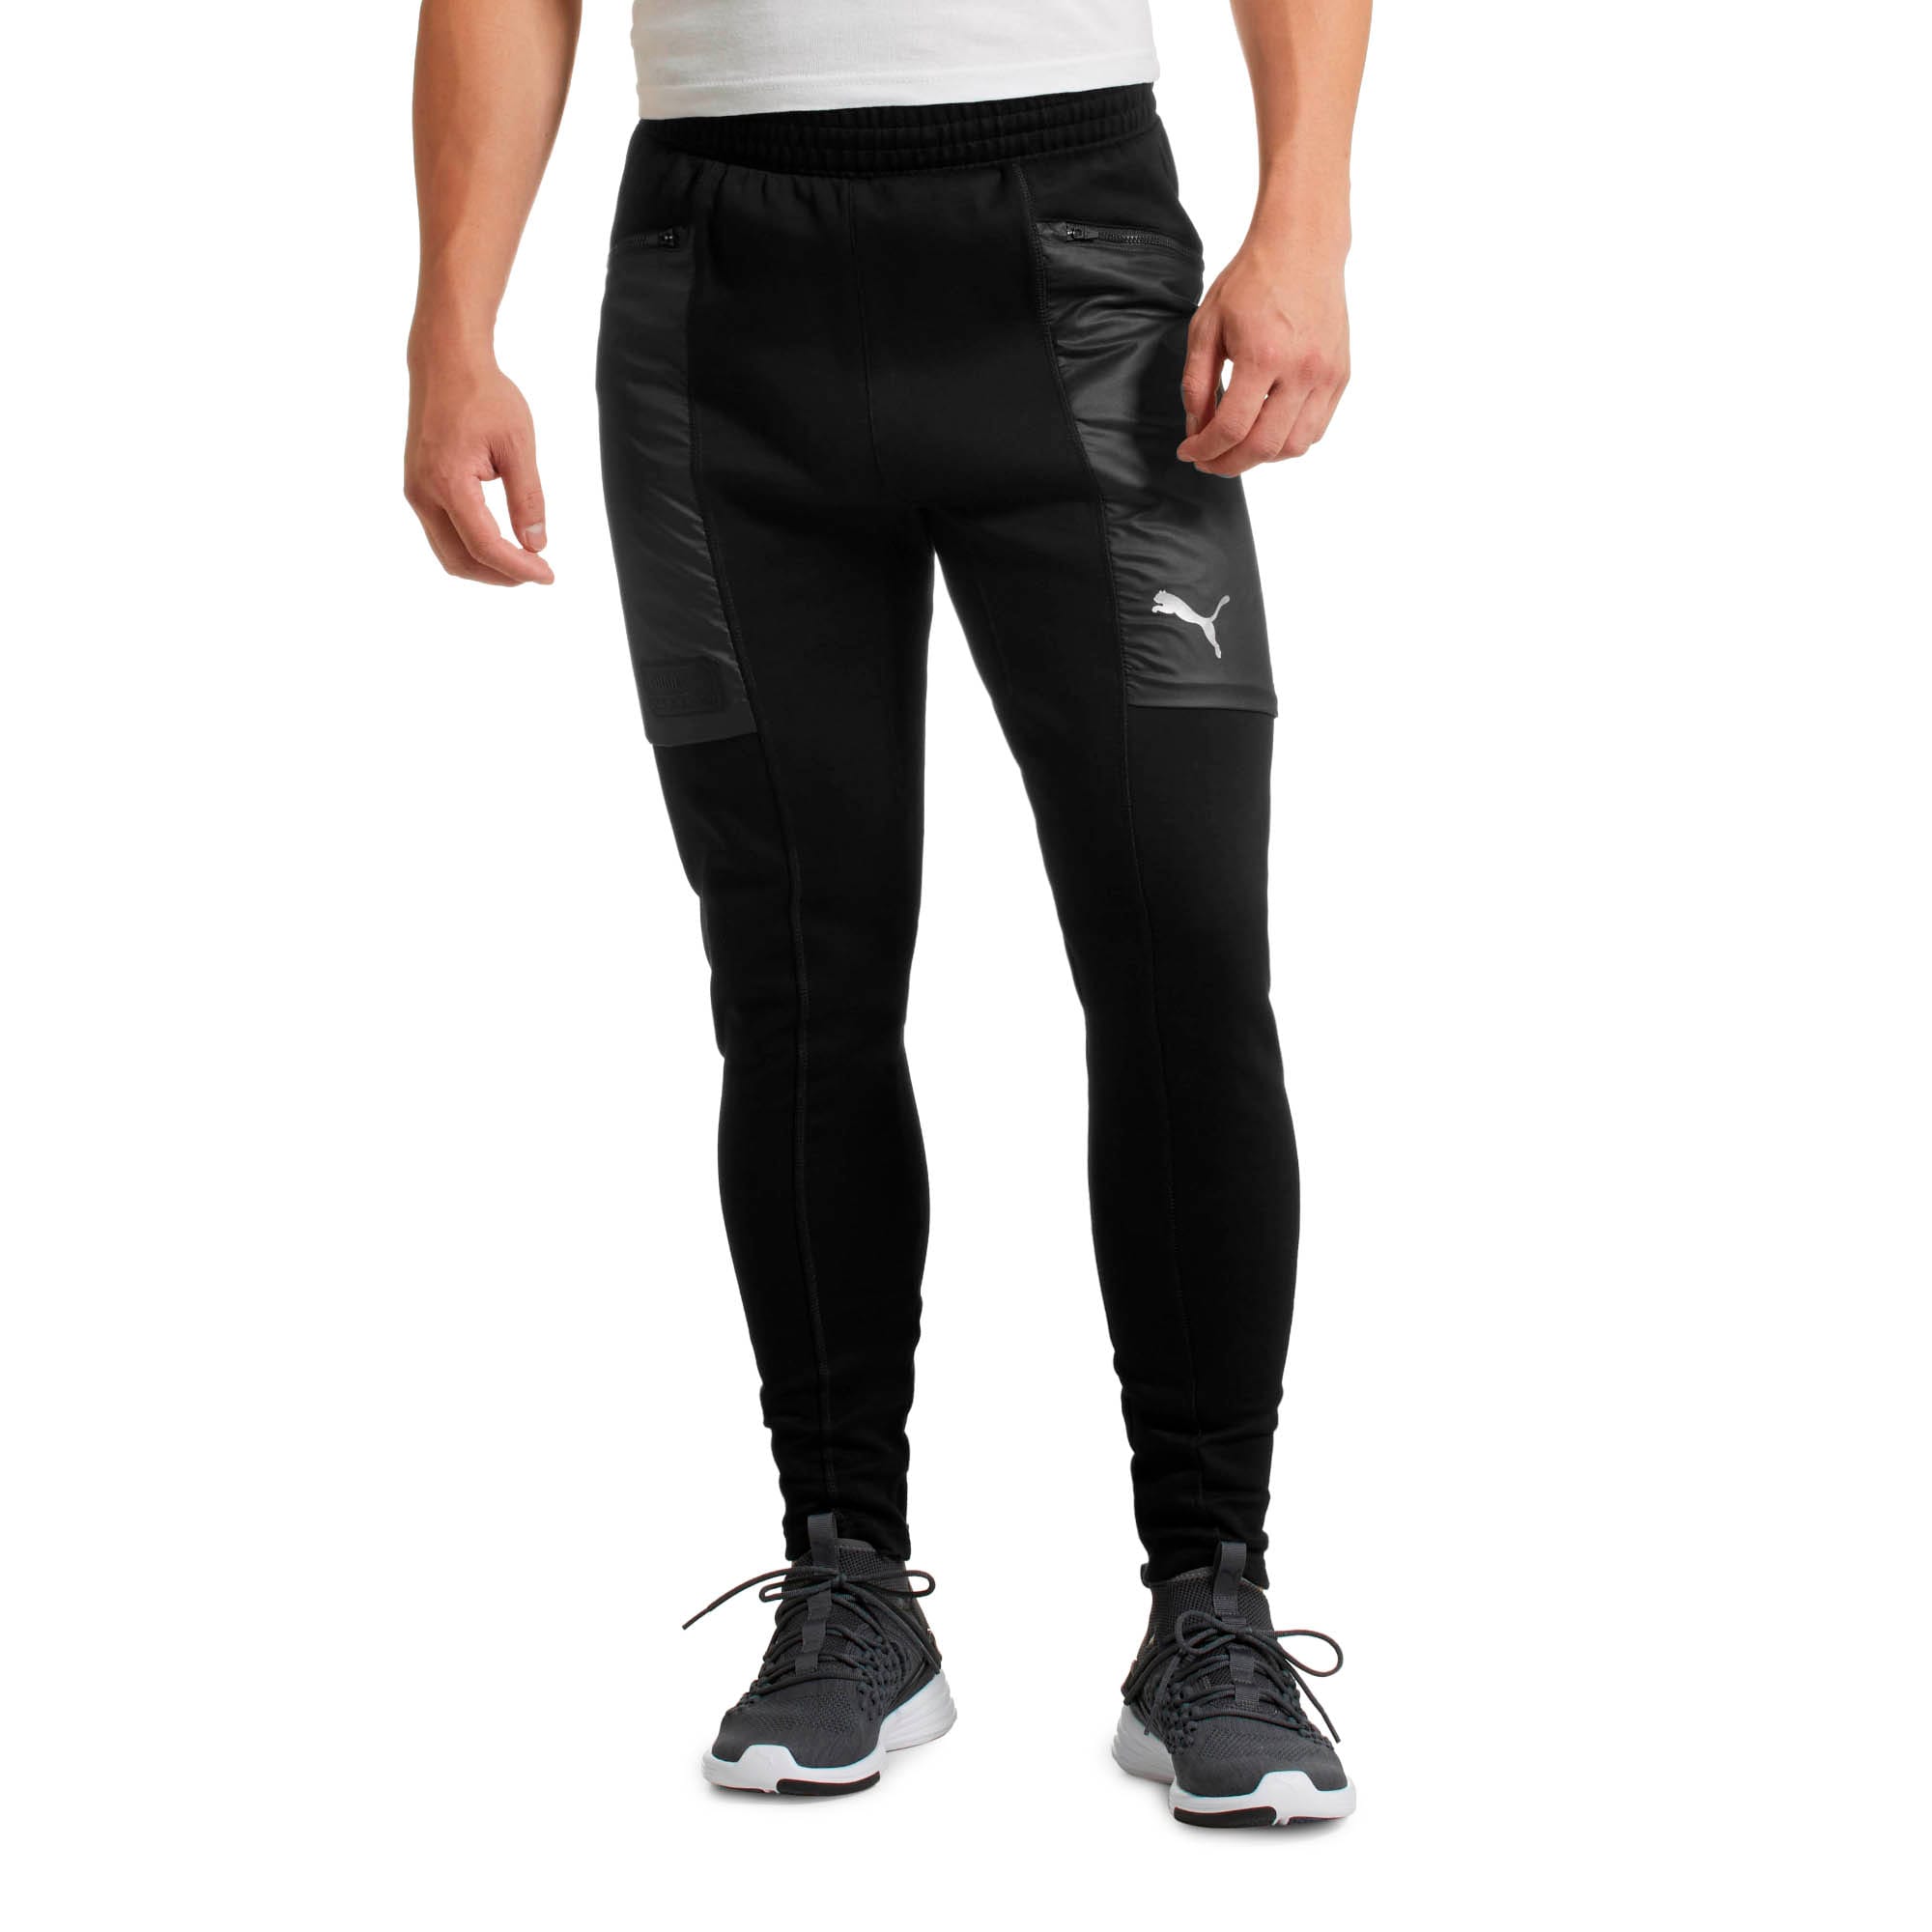 Buy Gaiam men sportswear fit training sweatpants black Online